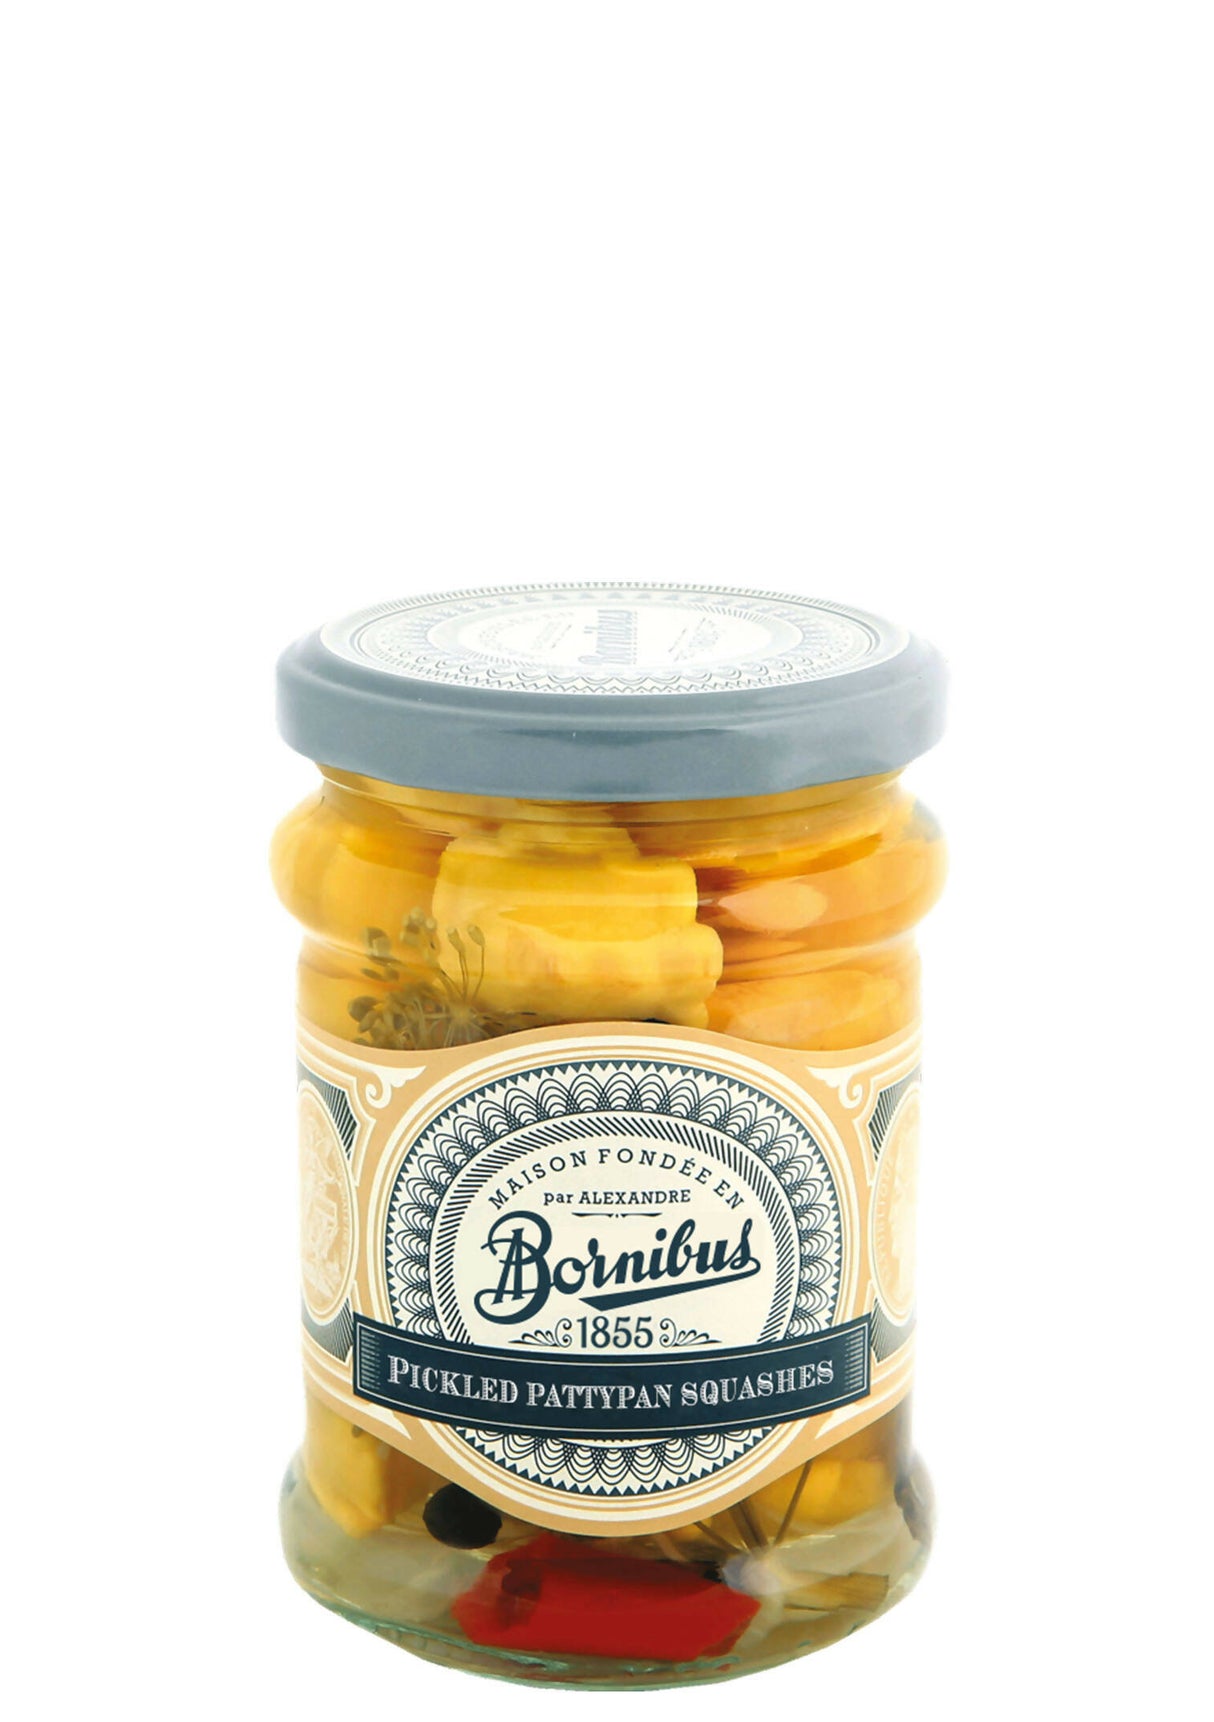 Bornibus Pickled Pattypan Squash